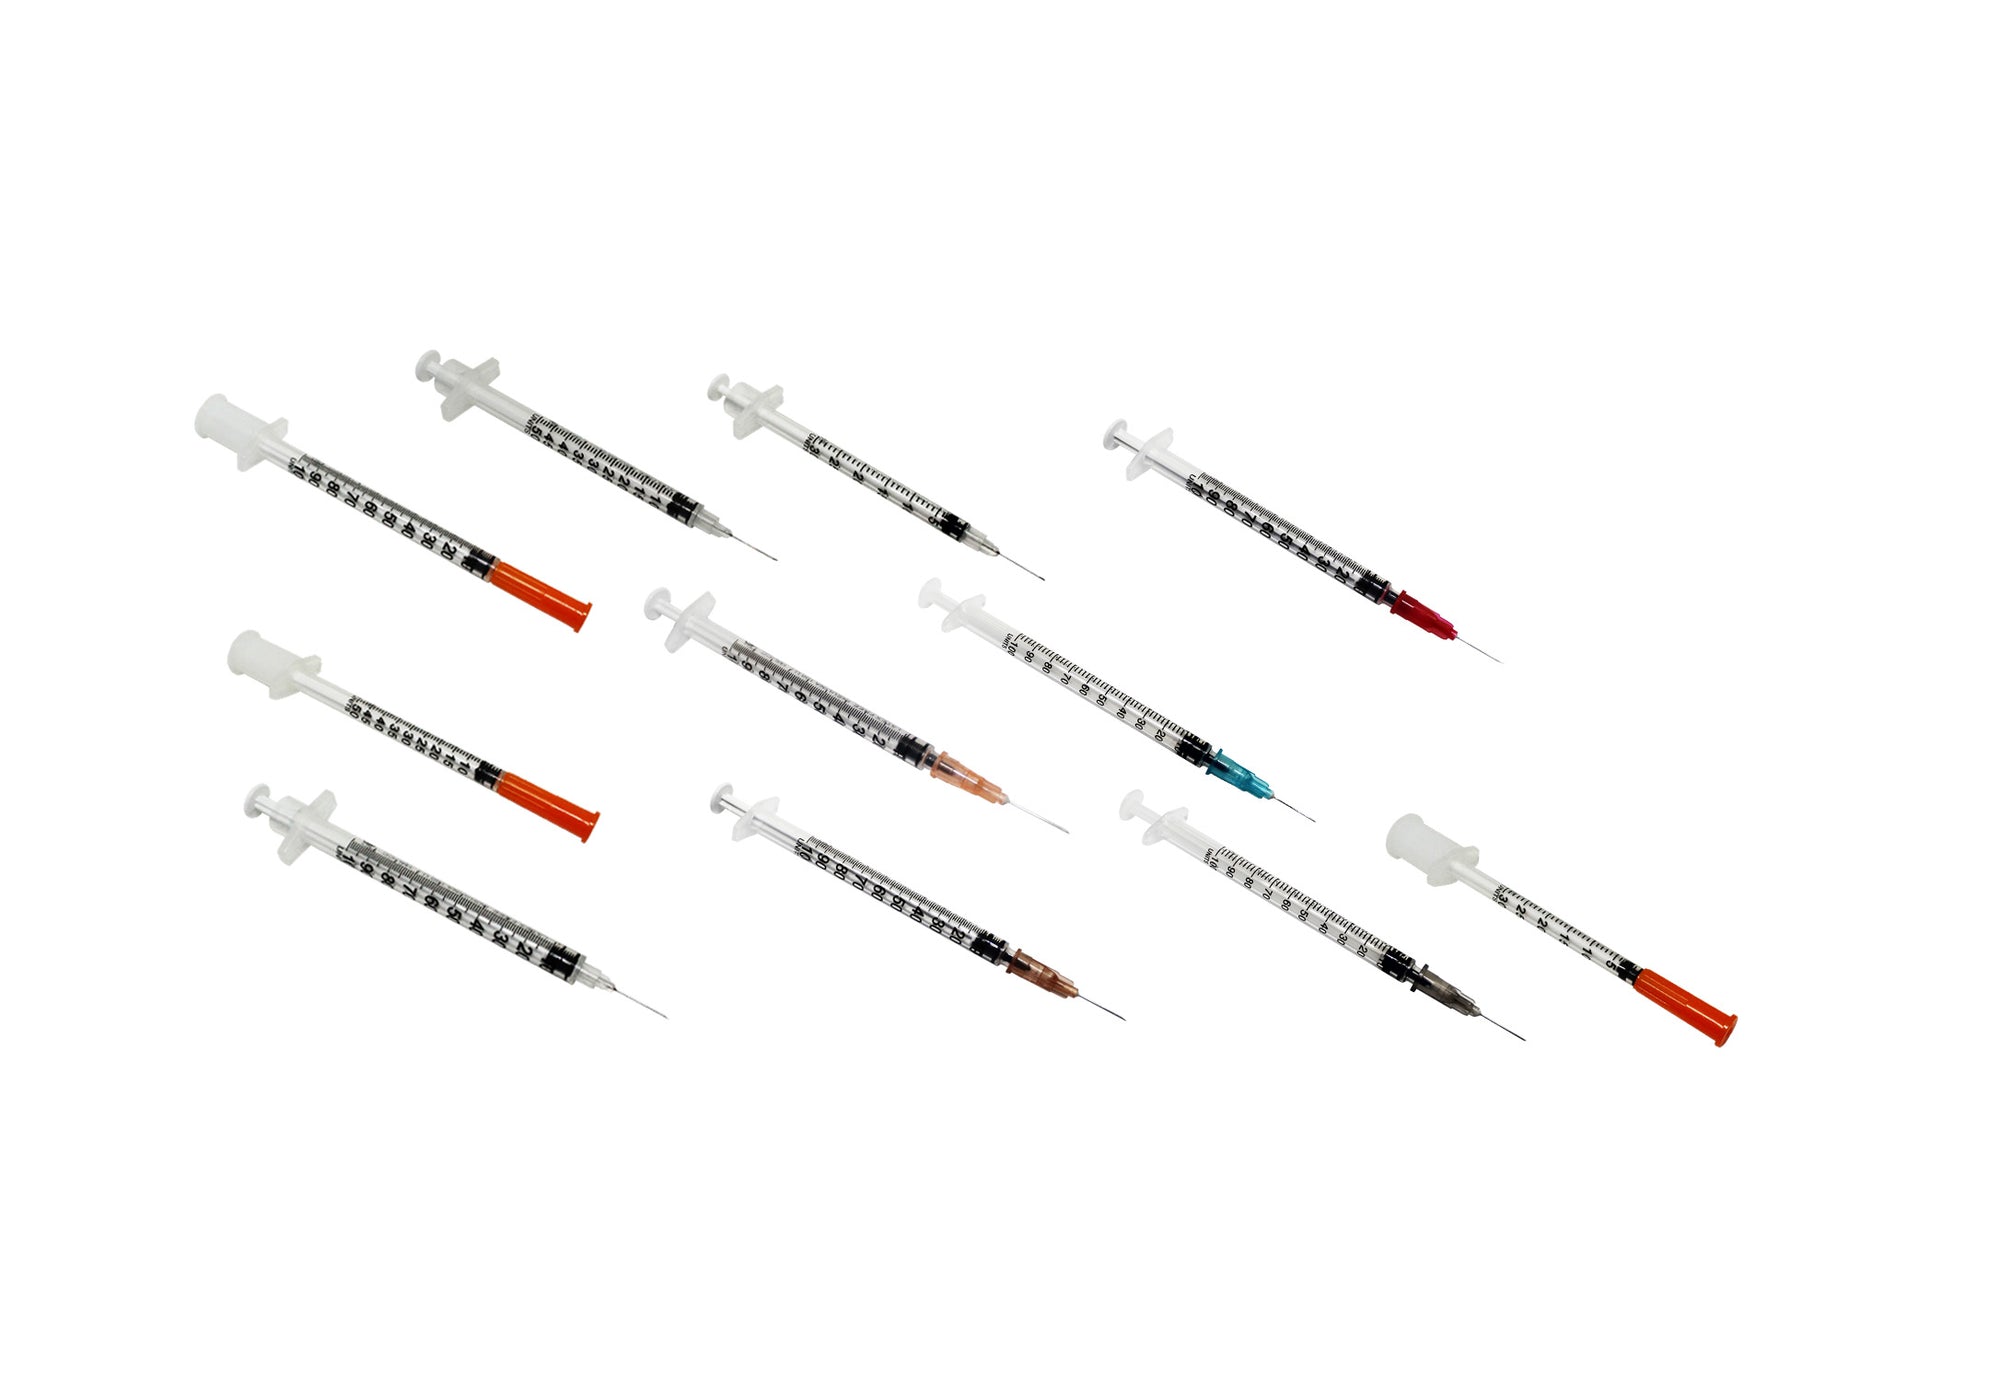 insulin syringe for diabetes injection sterile 1ml 0.5ml 0.3ml 25g 26g 27g 28g 29g 30g hypodermic needle